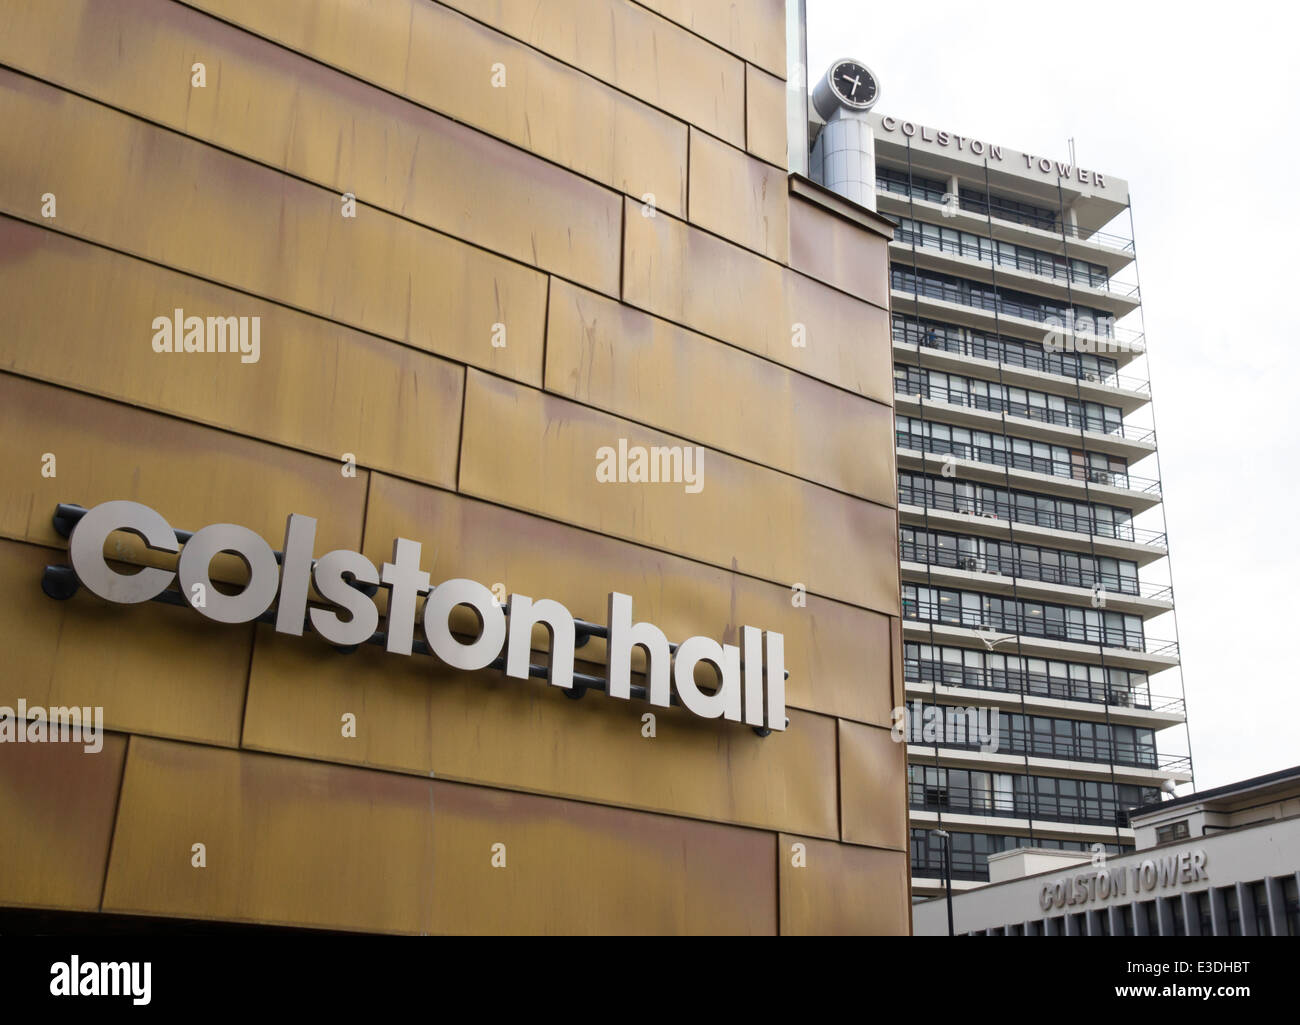 Vues de Bristol qui se rapportent à l'Colston, philanthrope, Marchand et Marchand d'esclave. La Colston Hall et Colston Tower Banque D'Images